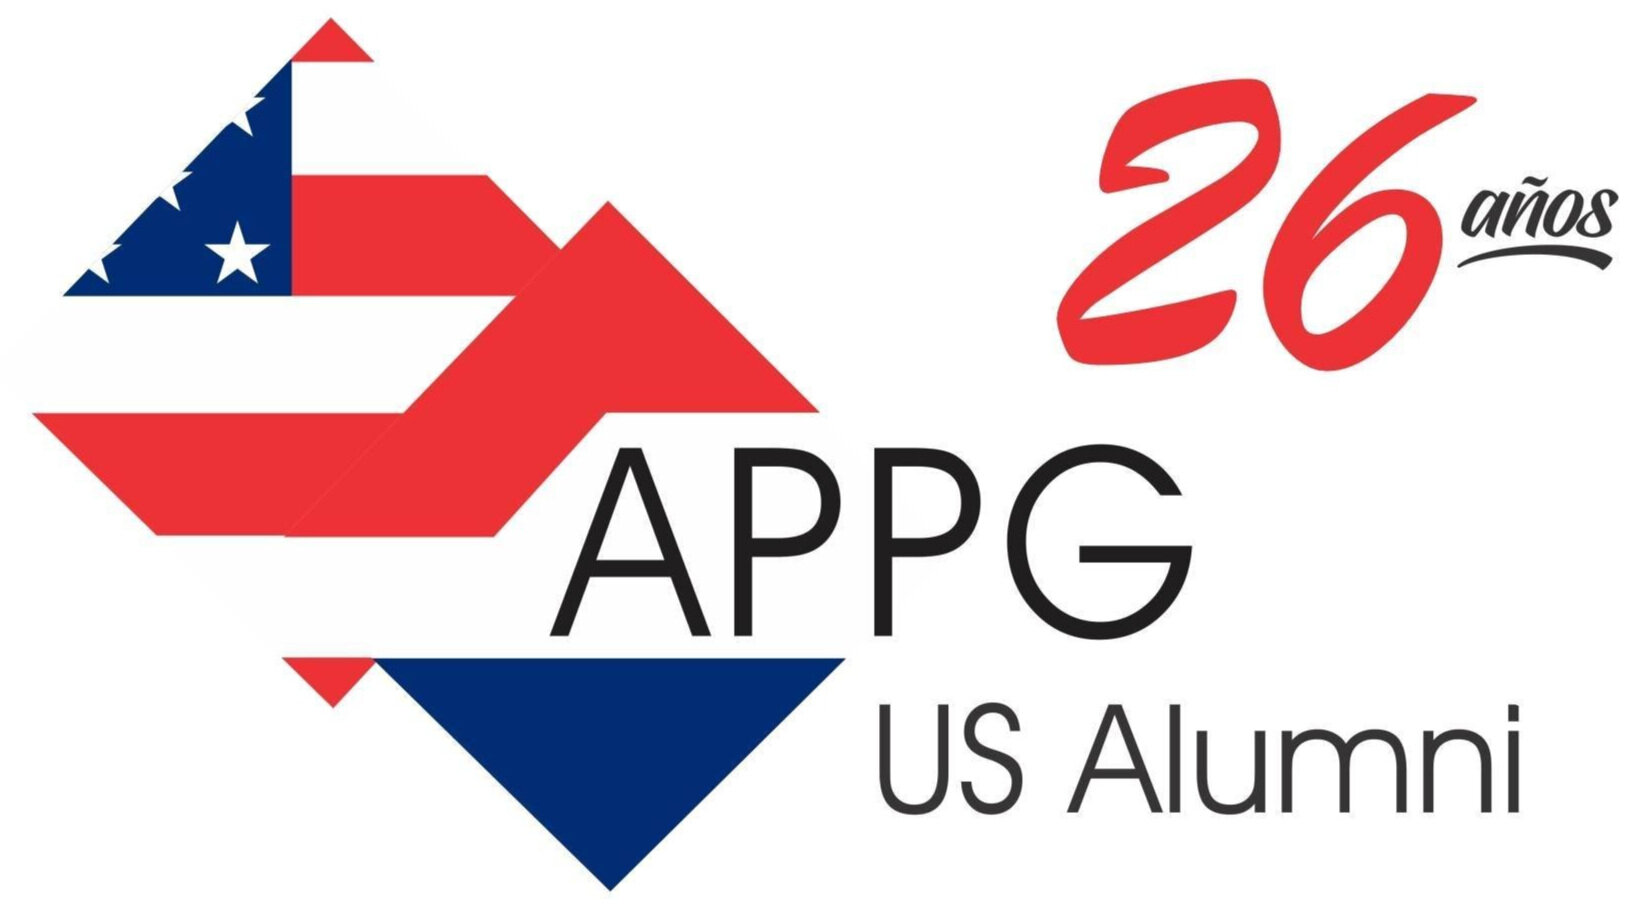 Paraguay+-+APPG.jpg